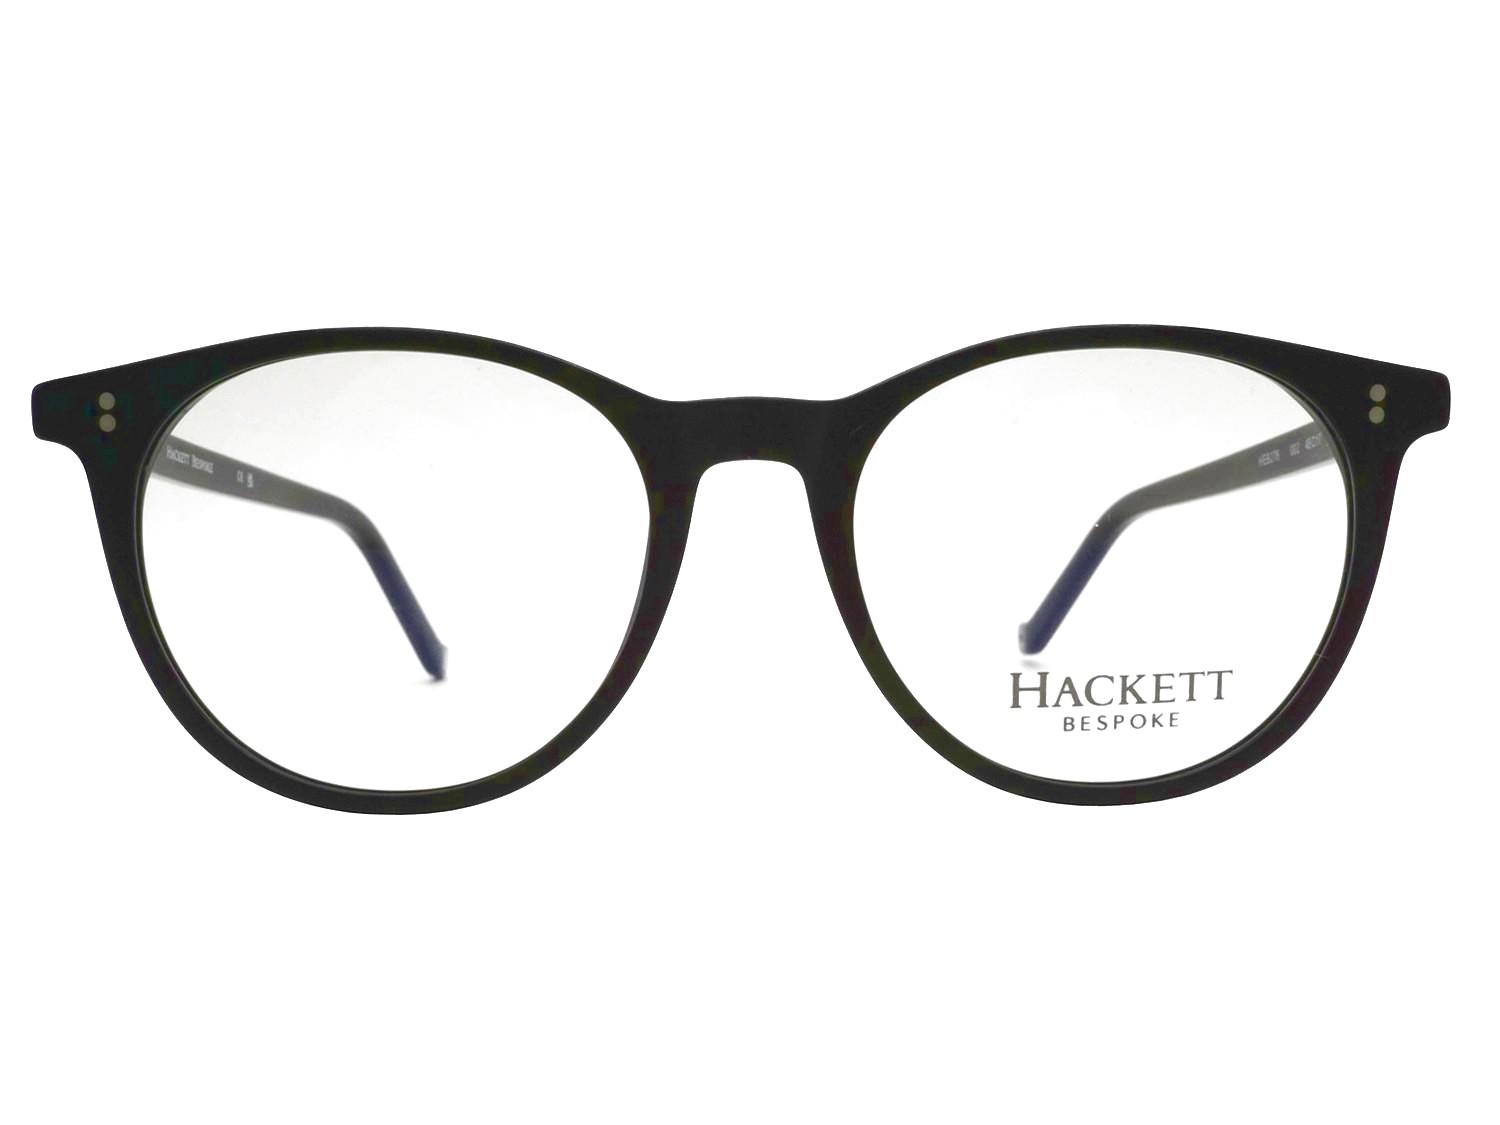 Hackett 276 002 bespoke